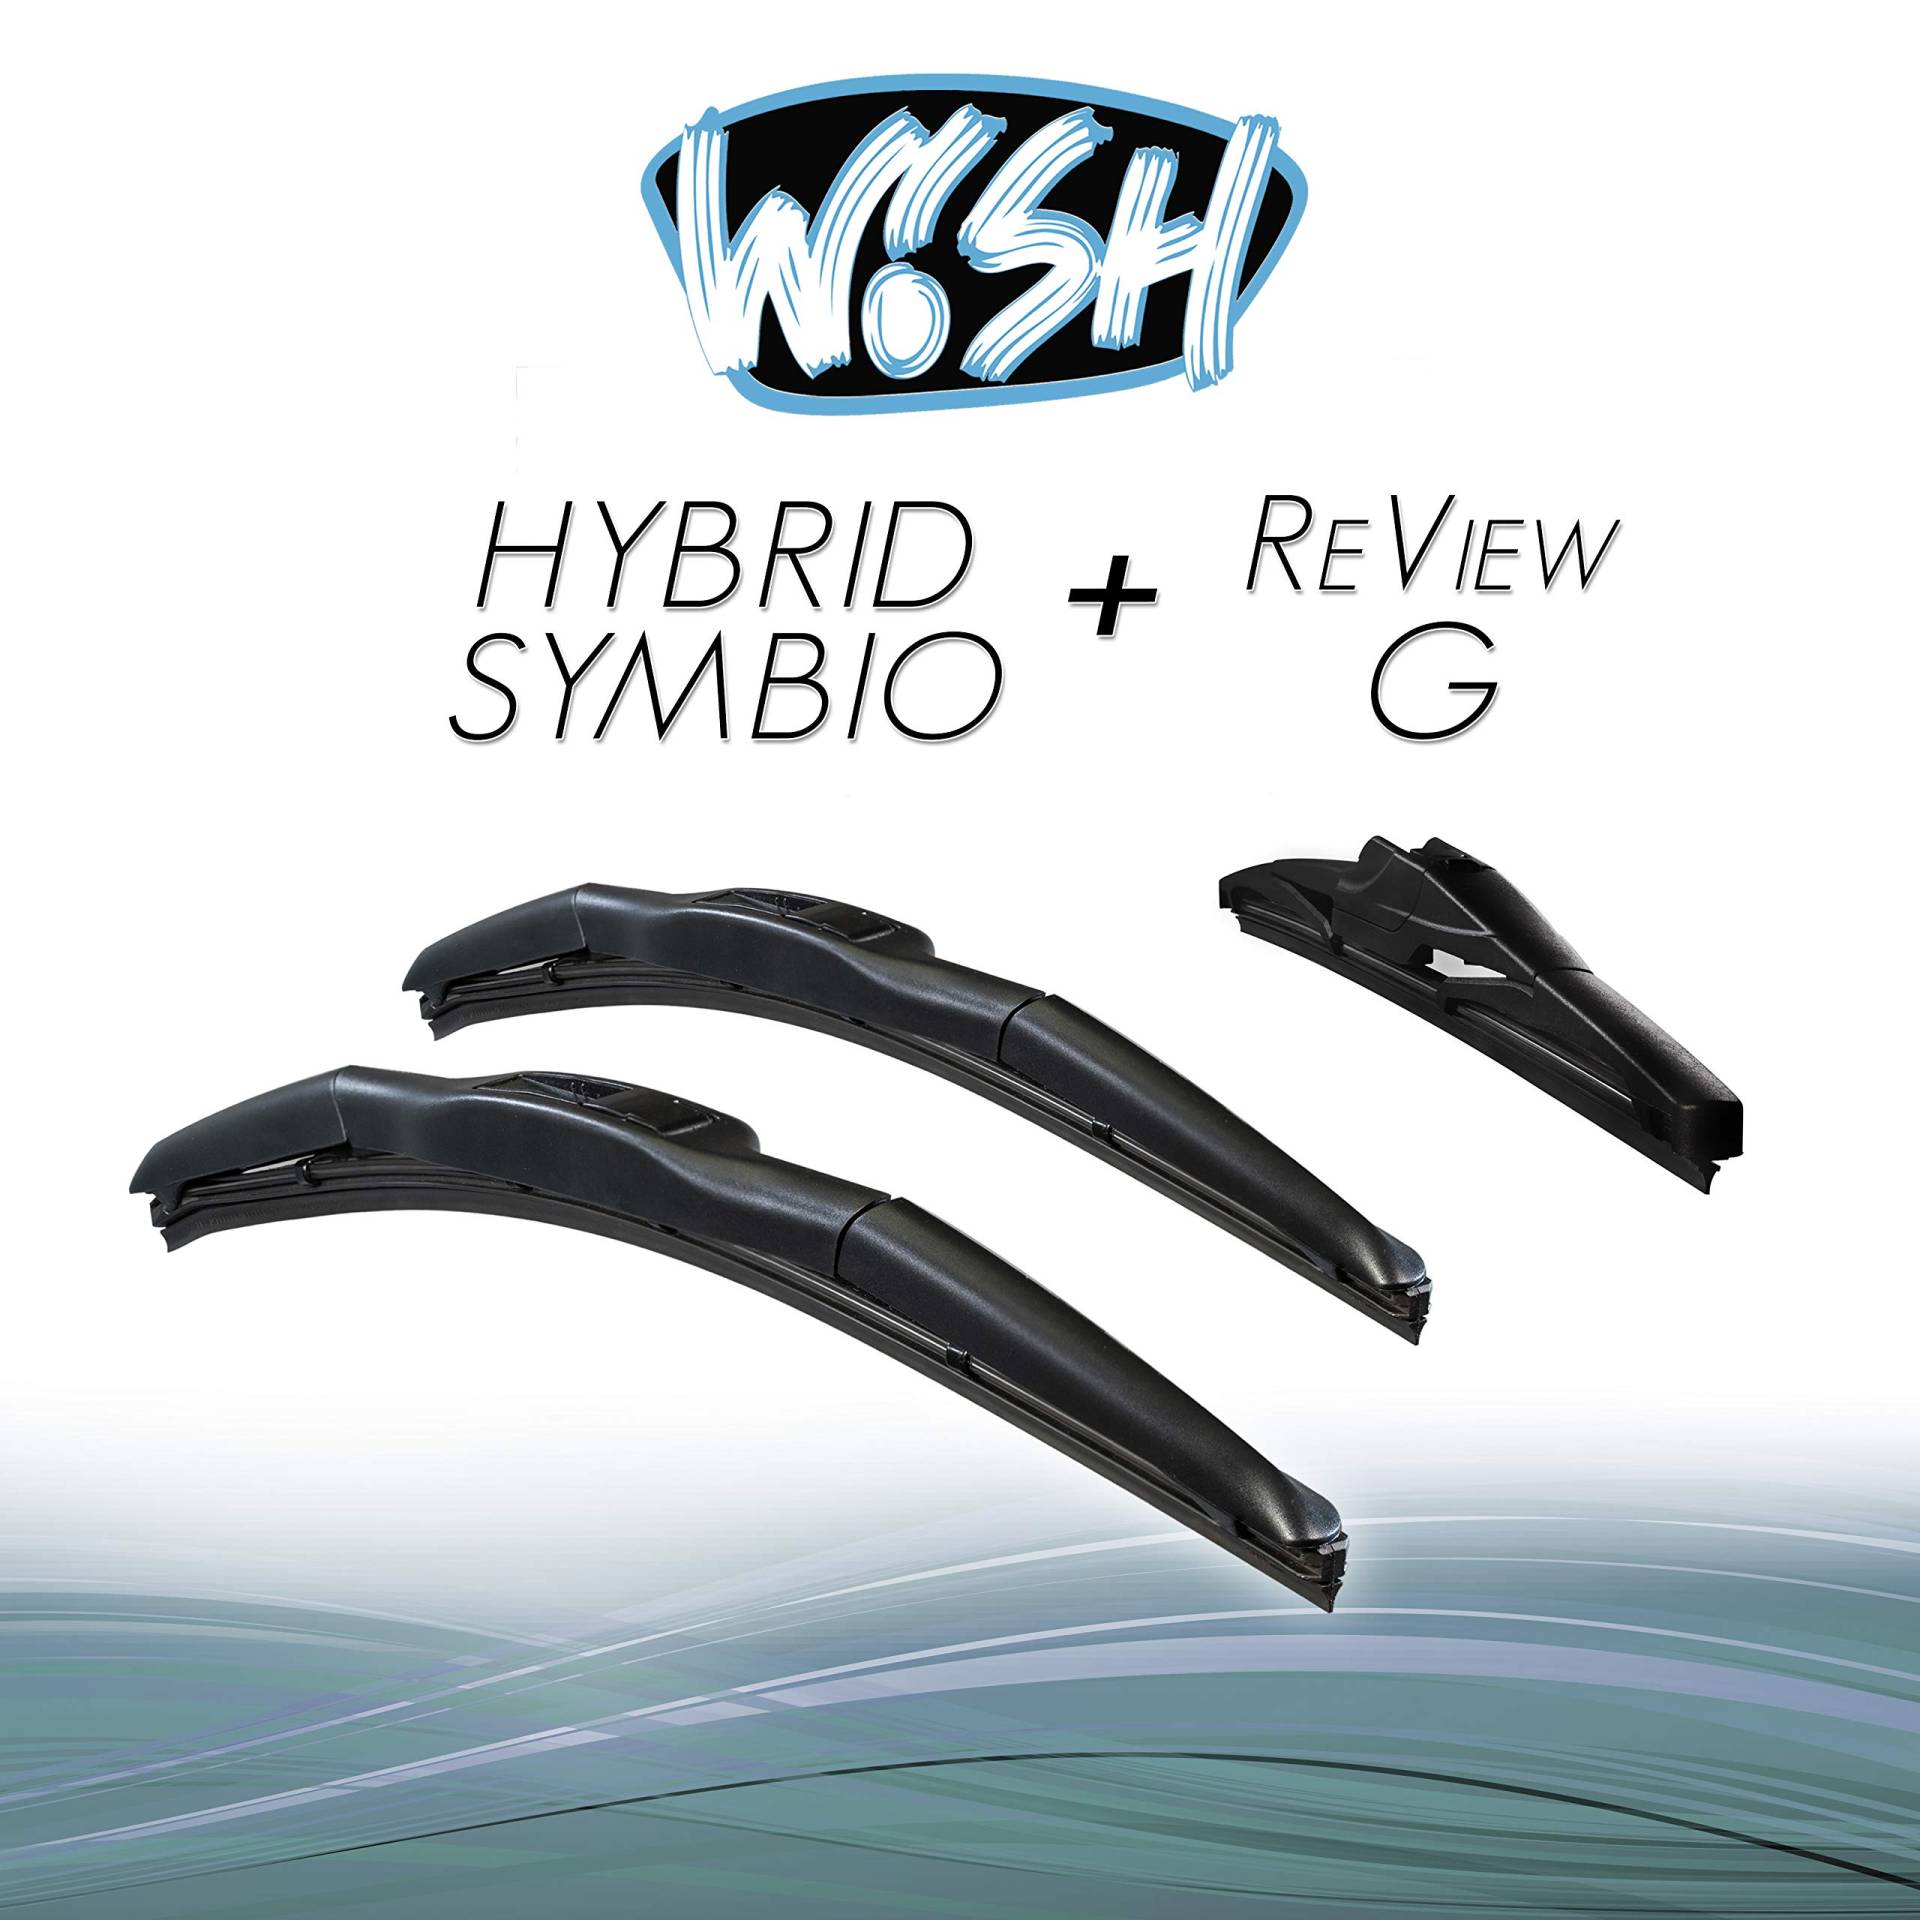 Wish® Hybrid Symbio Satz Front + Heck Scheibenwischer Länge: 24" 600mm / 16" 400mm / 12" 300mm Wischblätter Vorne und Hinten Hybrid-Scheibenwischer + Review G HS24.16.12RG von Wish